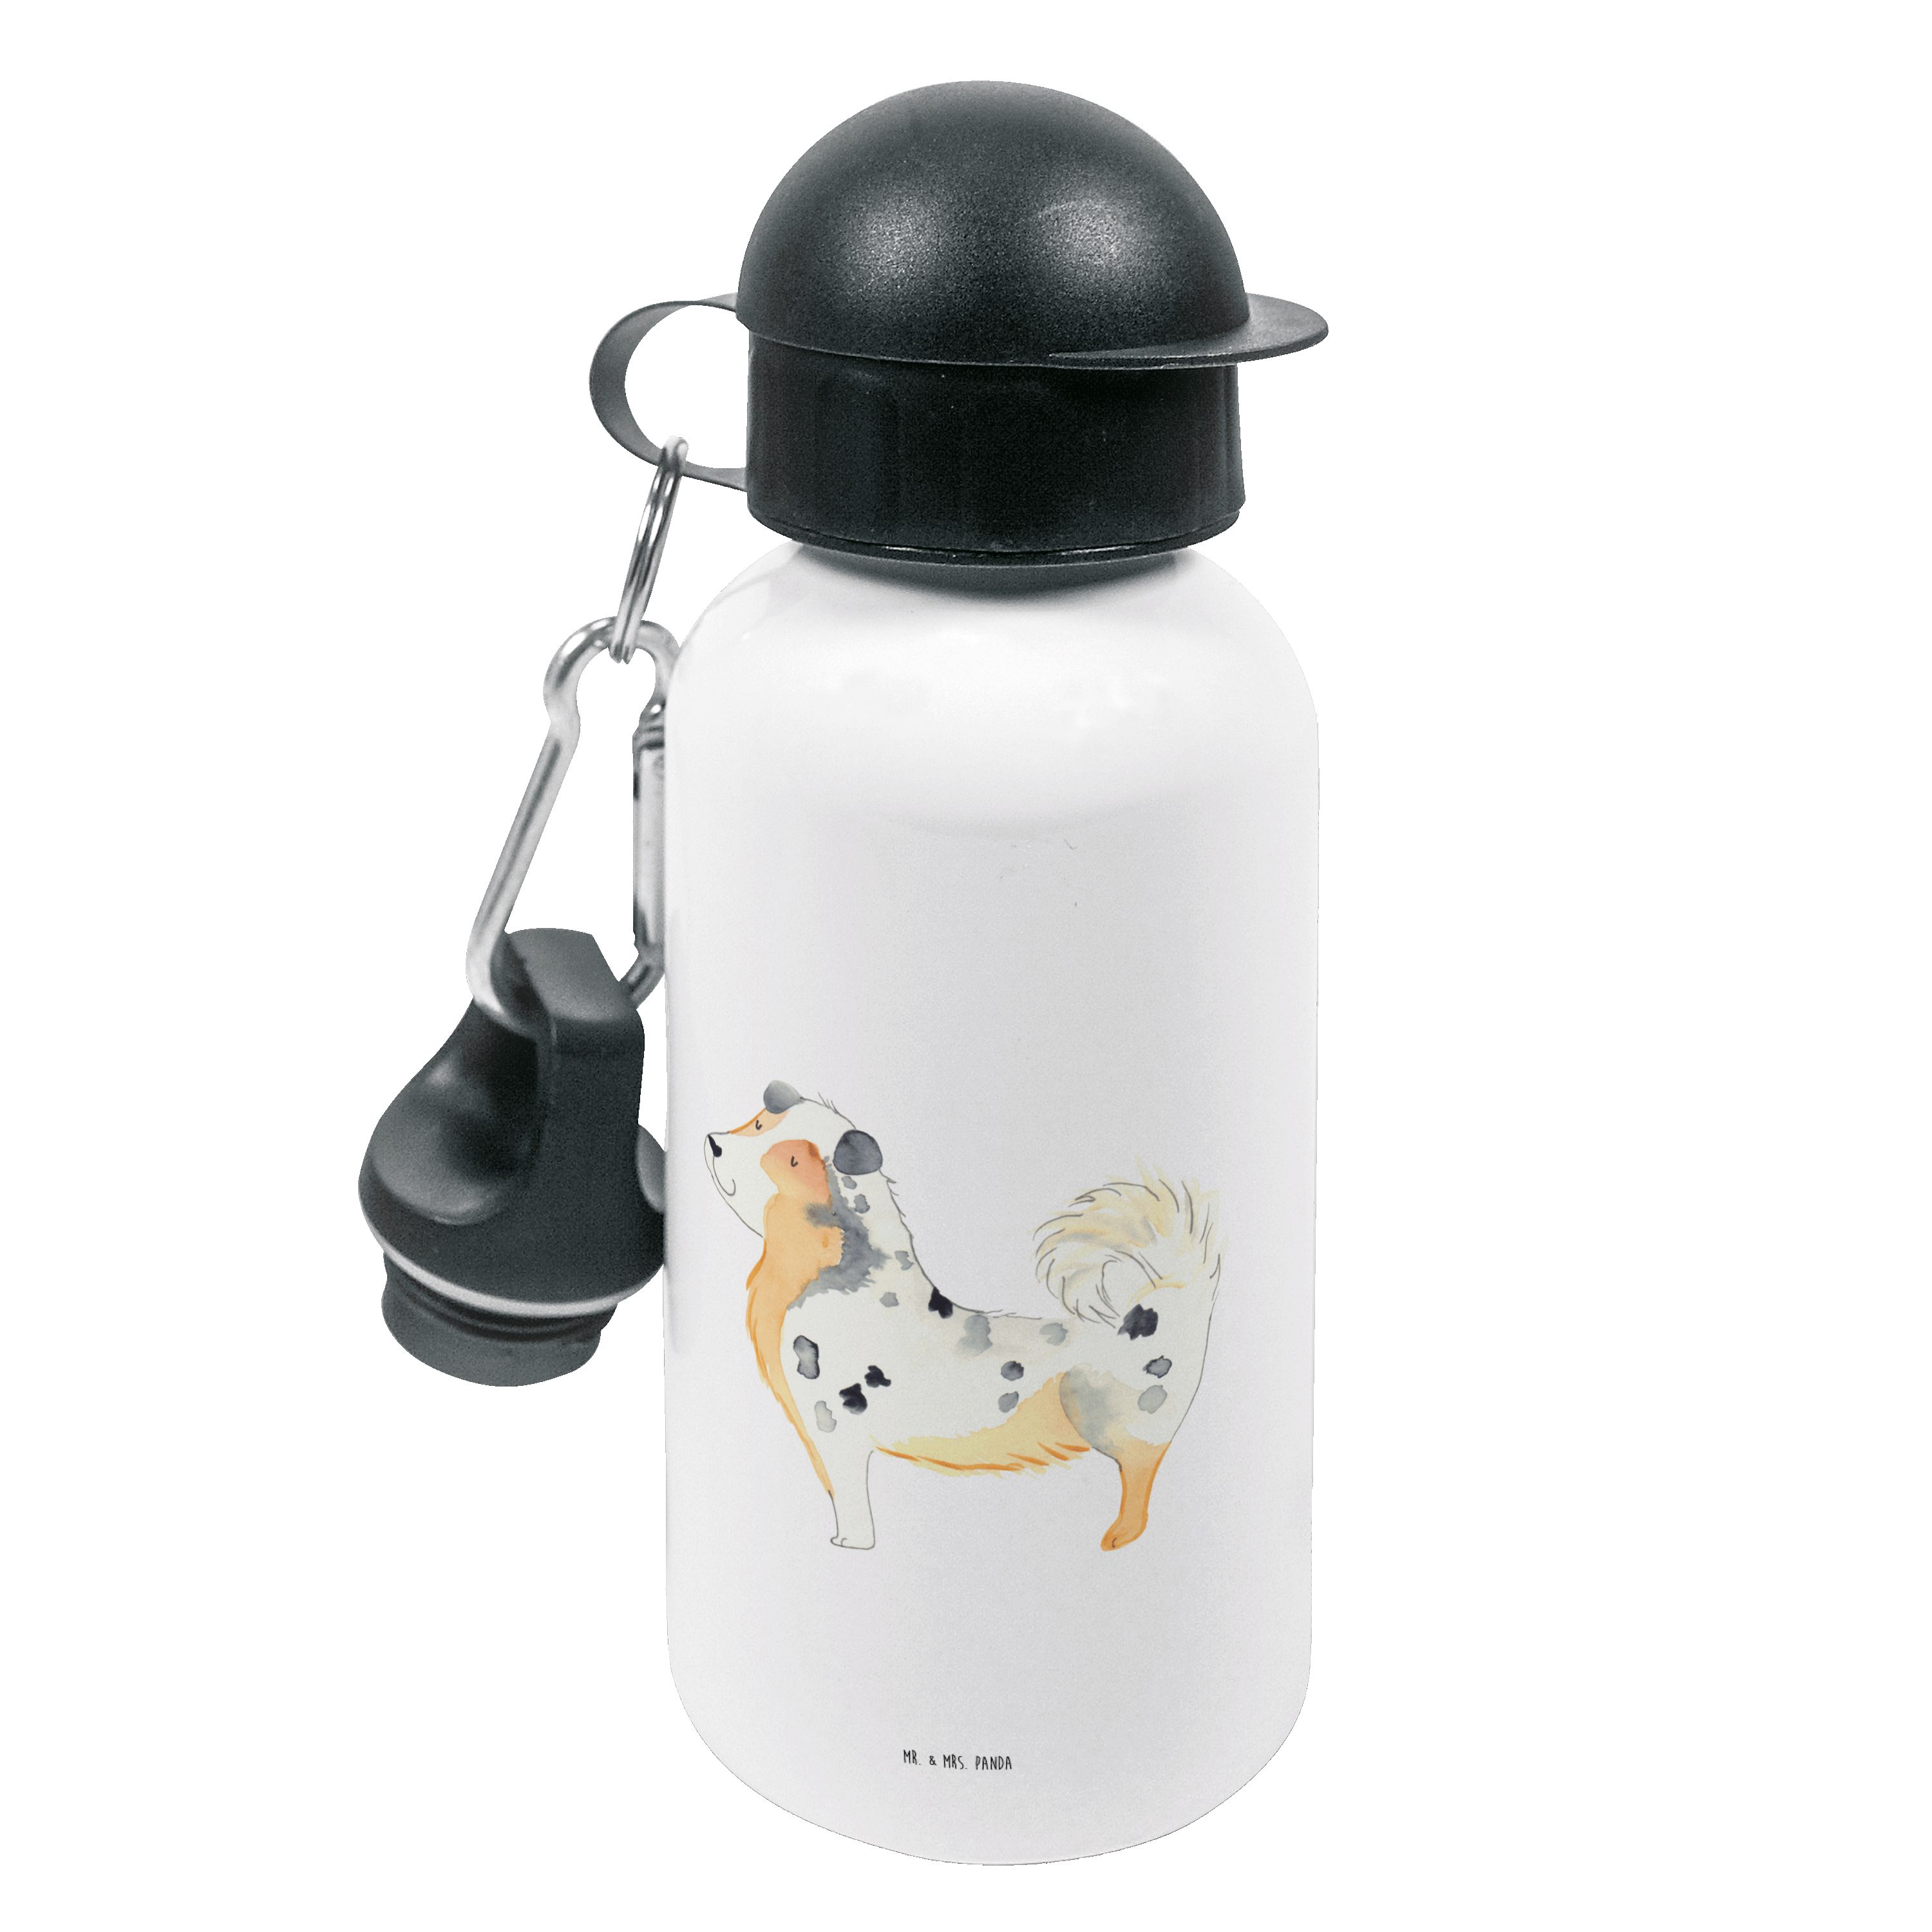 A & Hund, Mrs. - Shepherd Weiß Australien flauschig, Panda Trinkflasche Geschenk, Hundemotiv, Mr. -